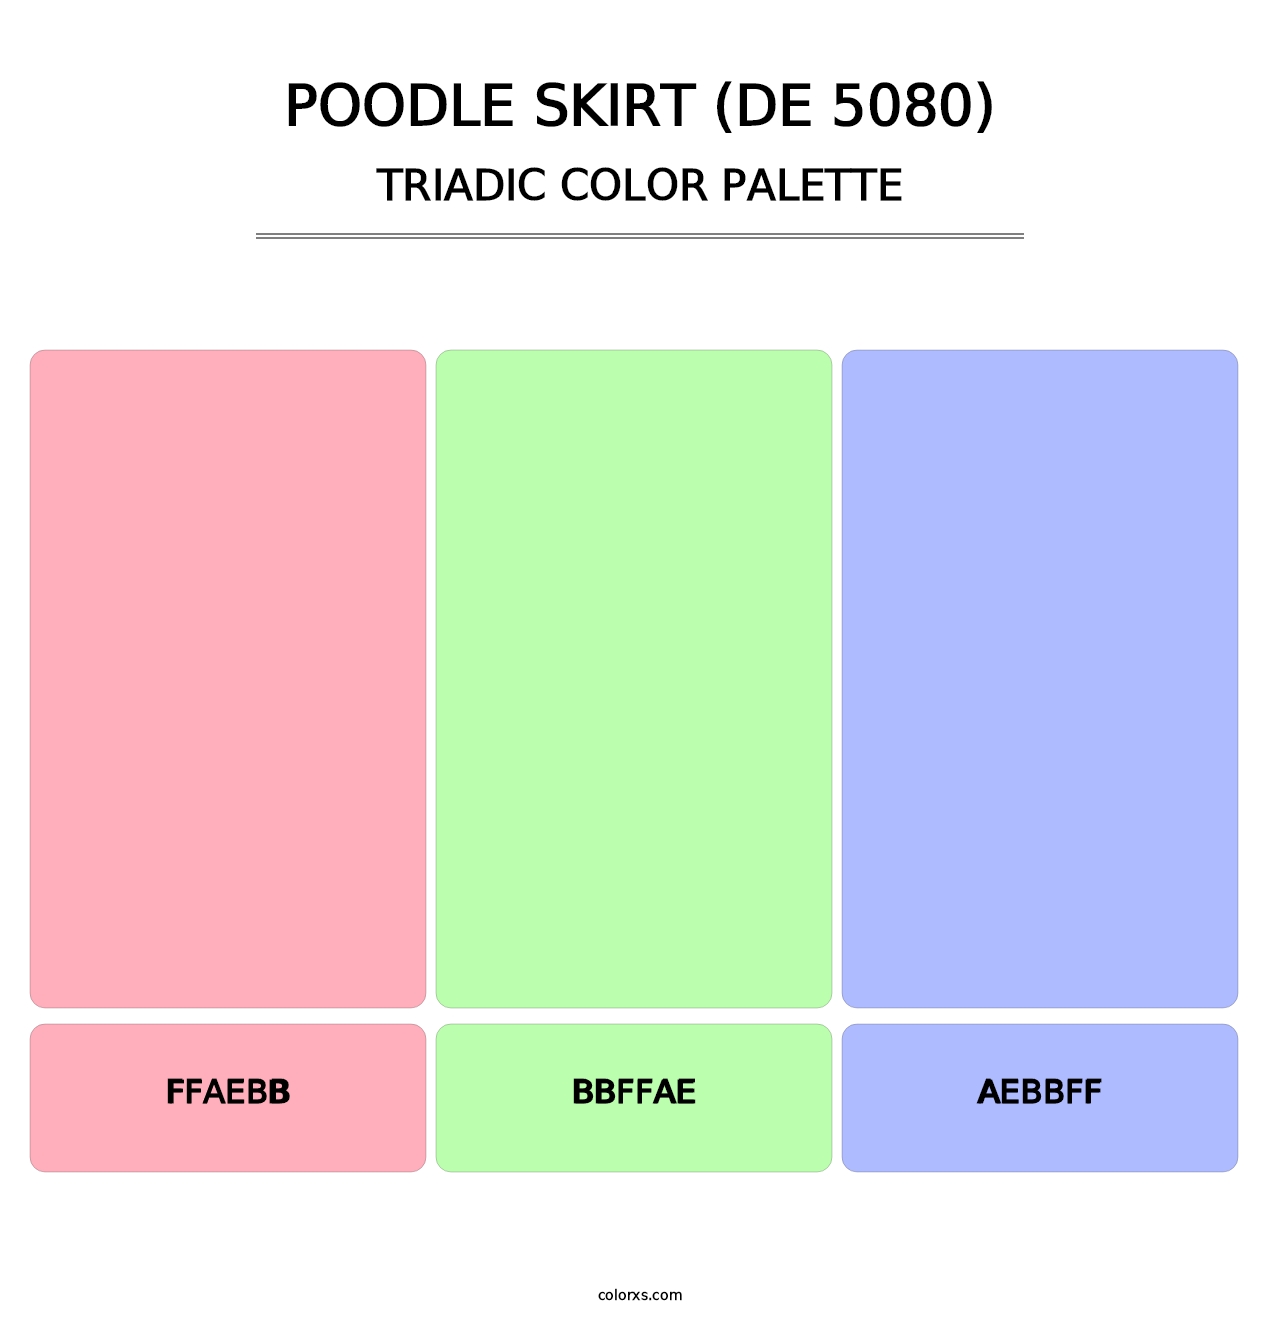 Poodle Skirt (DE 5080) - Triadic Color Palette